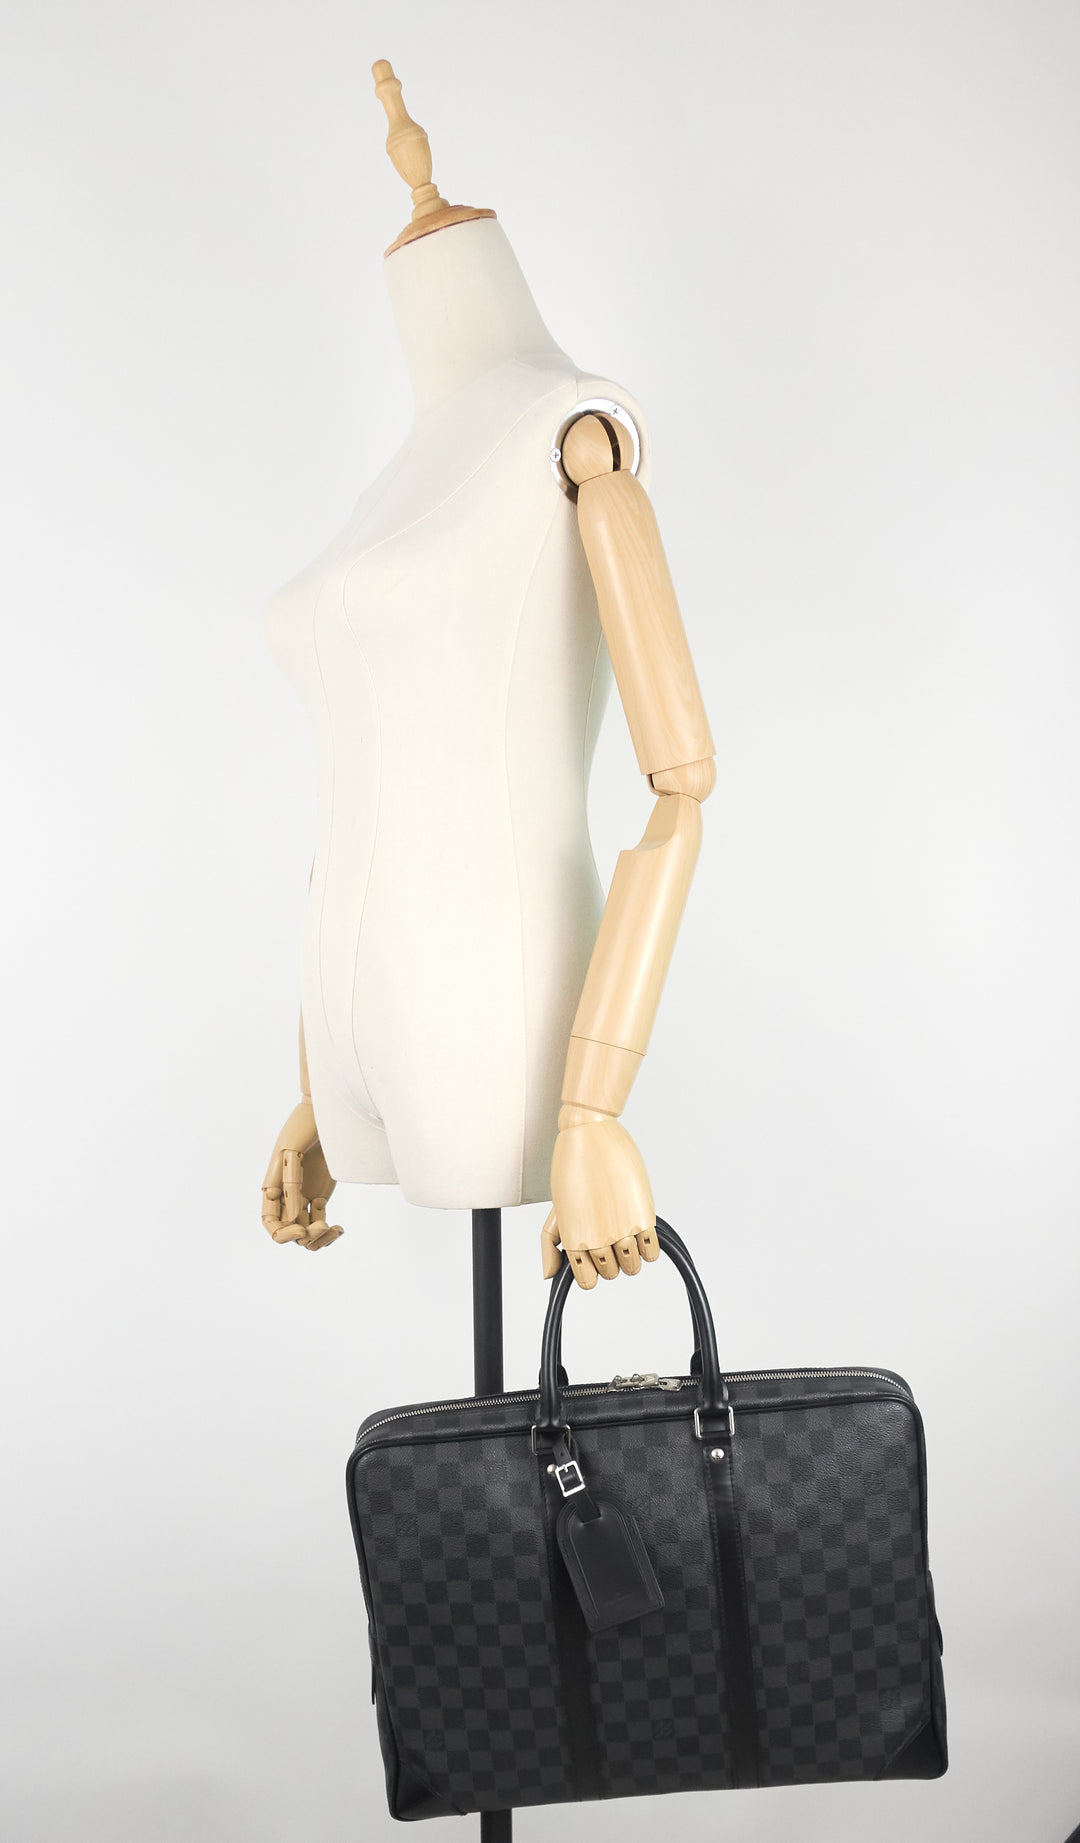 Louis Vuitton Porte Document Voyage PM M41466 business bag briefcase Damier